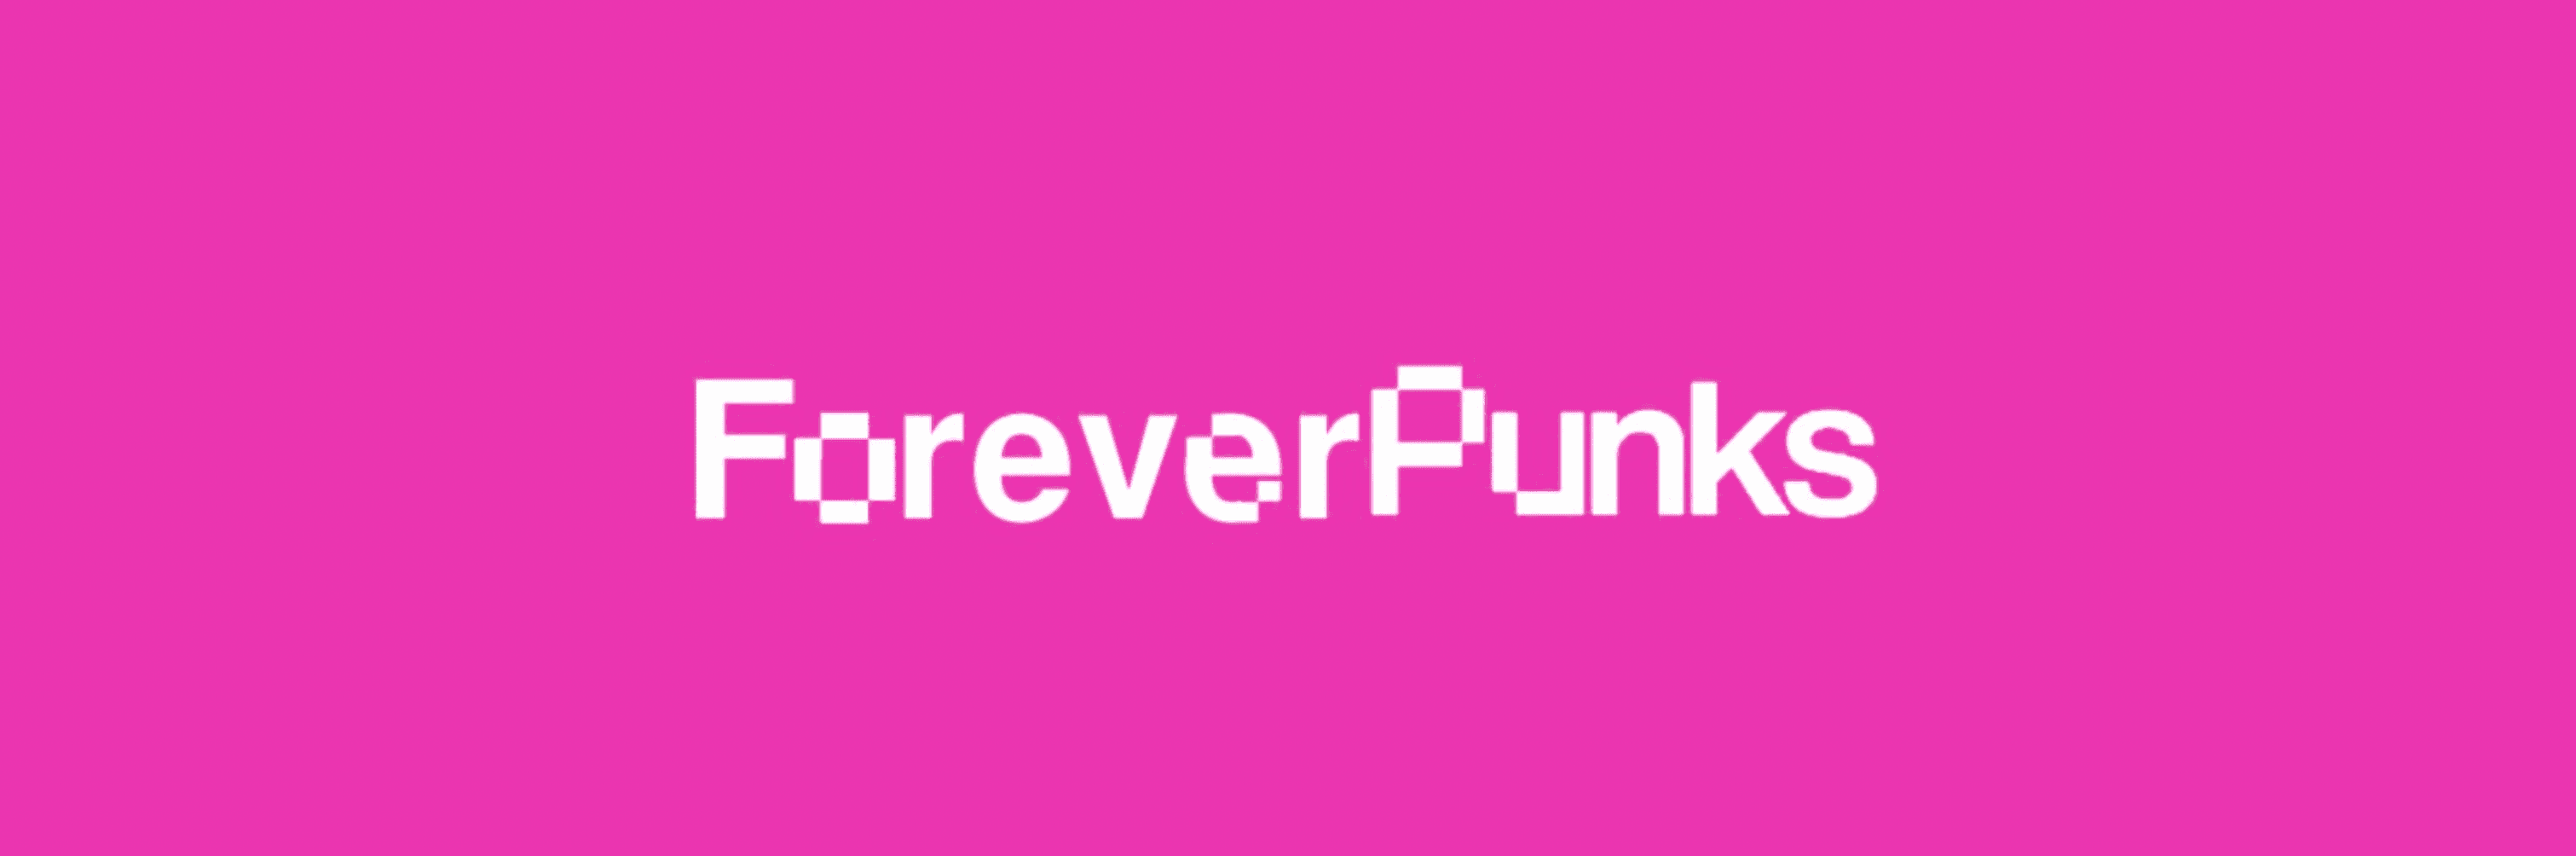 Foreverpunks_eth Banner